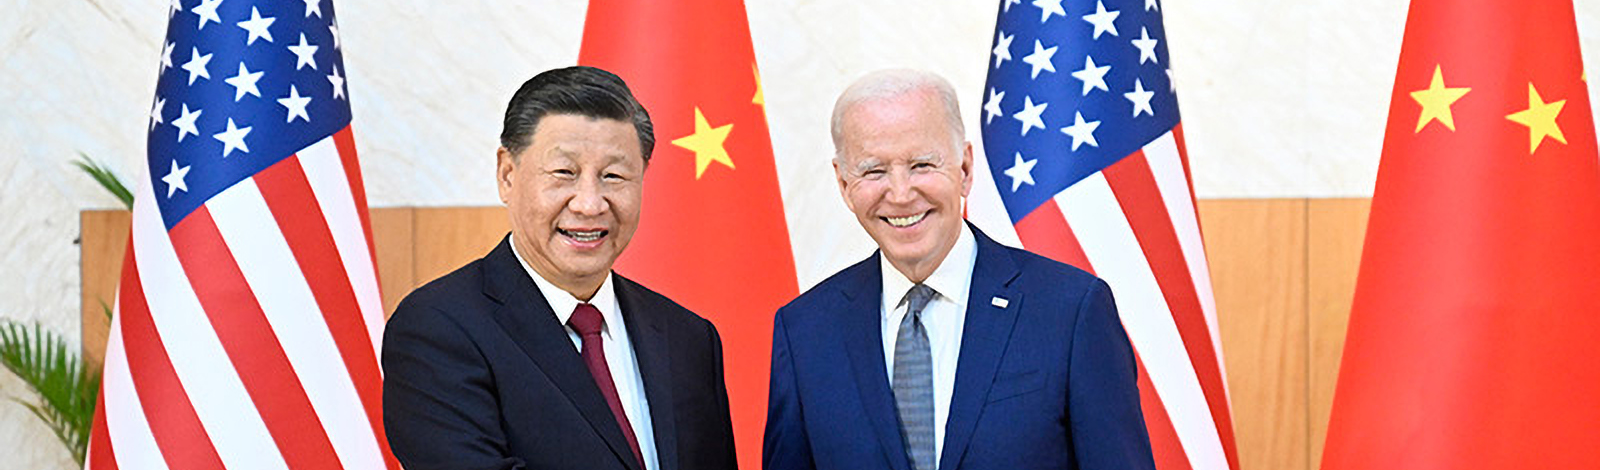 Pepe Escobar | Biden lança promessas a Xi. Quais razões tem a China para confiar nos EUA?